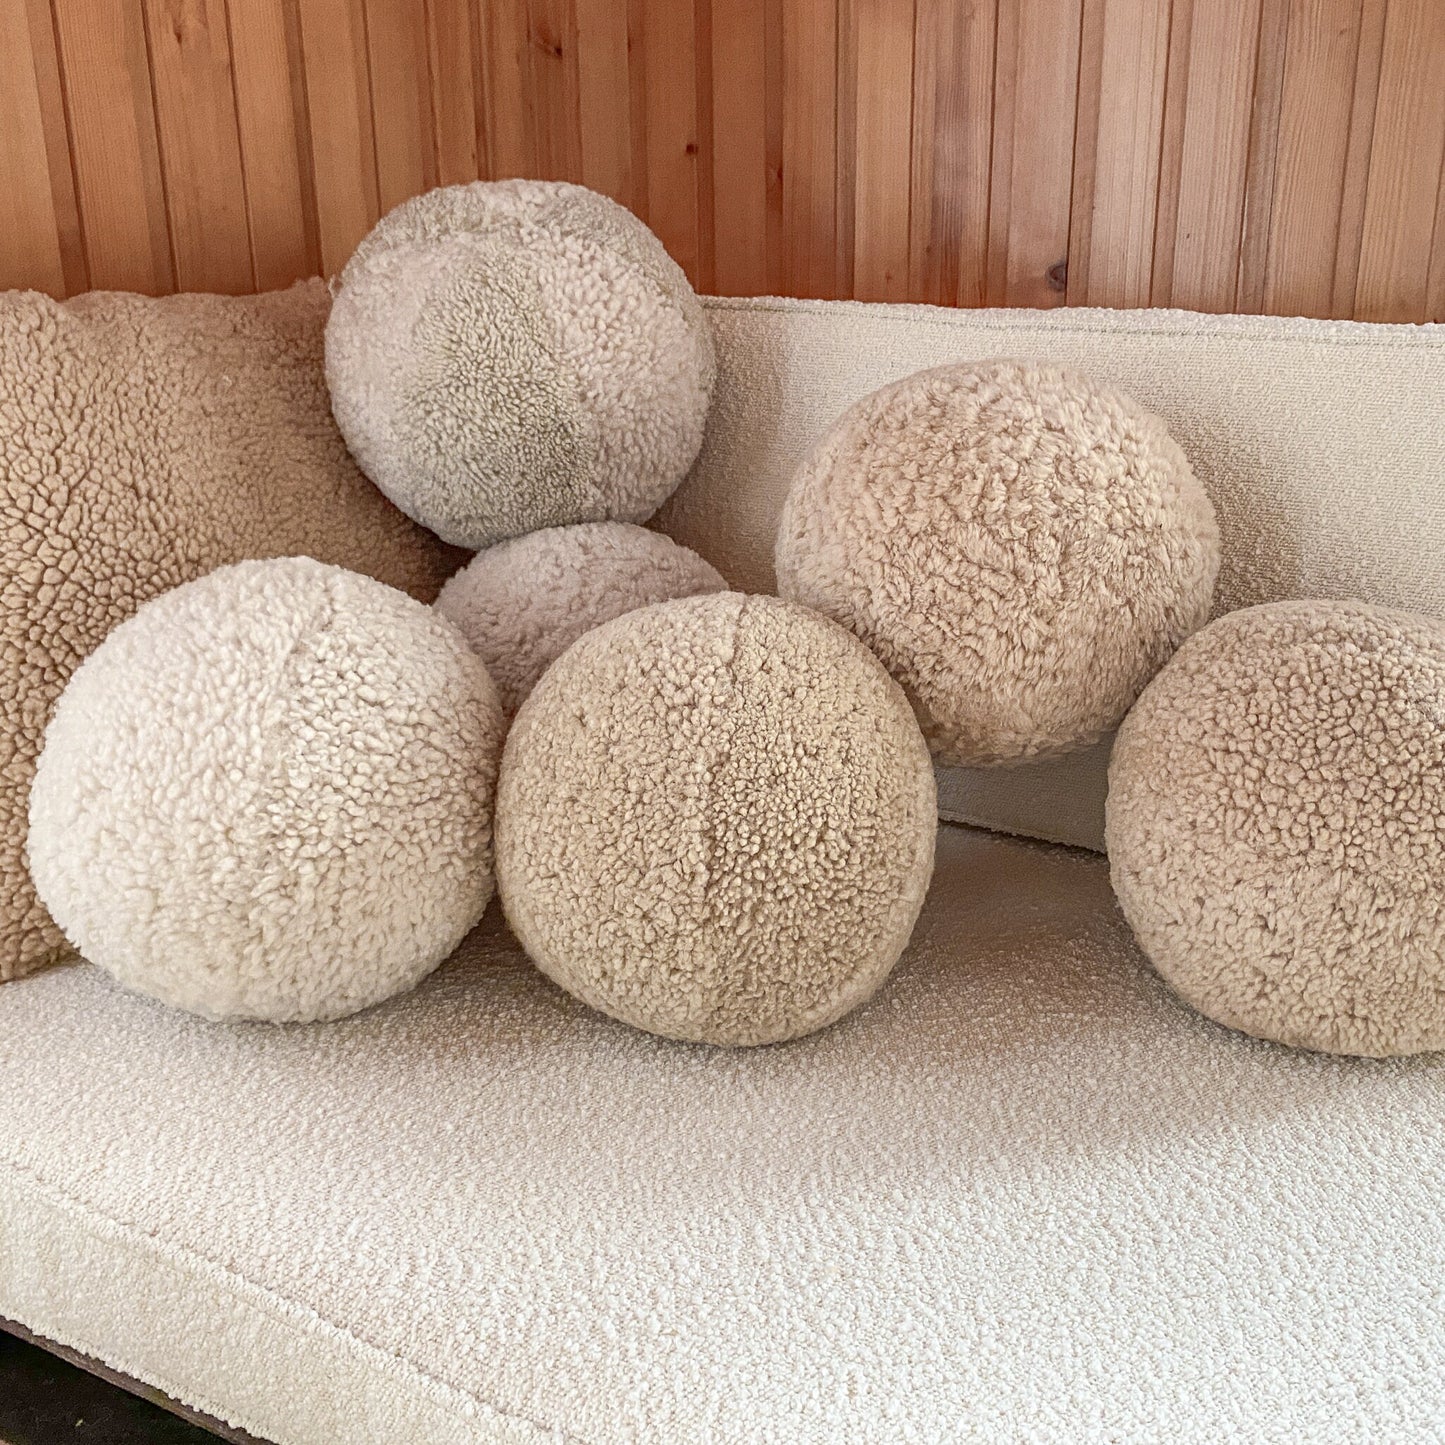 Ball Cushion - Curly Merino Sheepskin Ball Pillow - Boucle Throw Pillow - Sheepskin shearling Pillow - Round Throw Ball Pillow - boho pillow